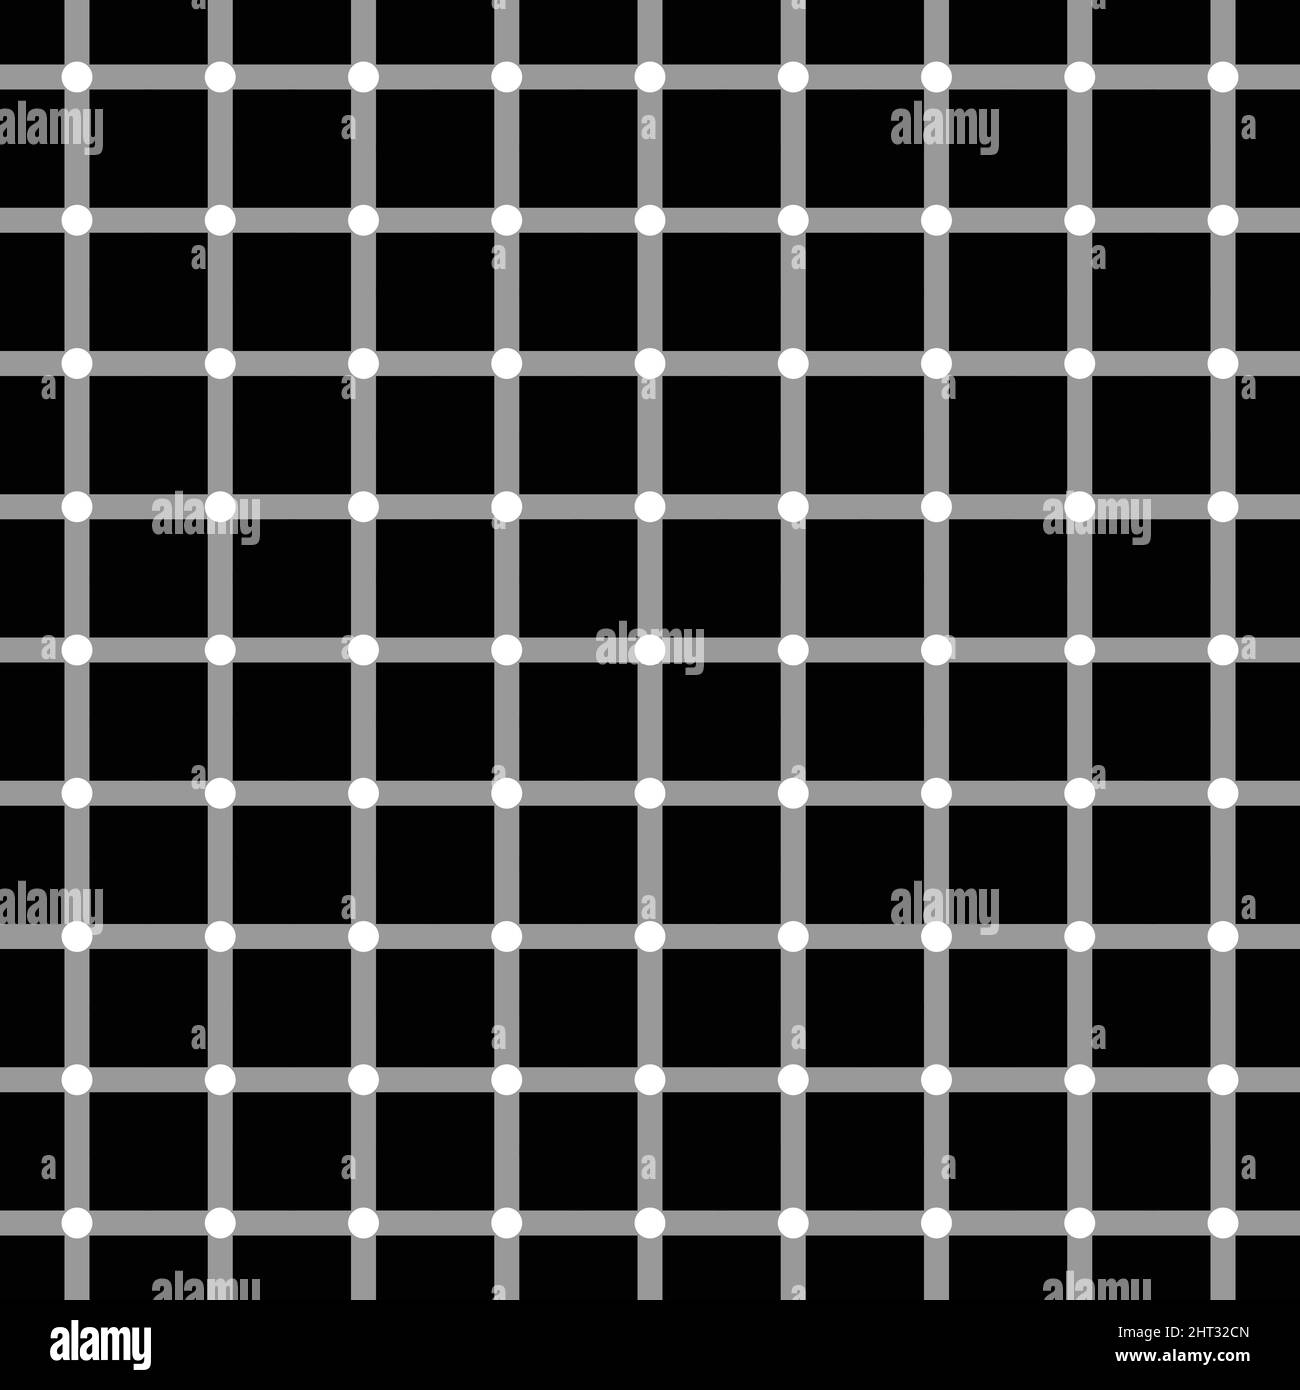 Illusion de grille scintillante, motif géométrique d'illusion optique. Illustration vectorielle Illustration de Vecteur